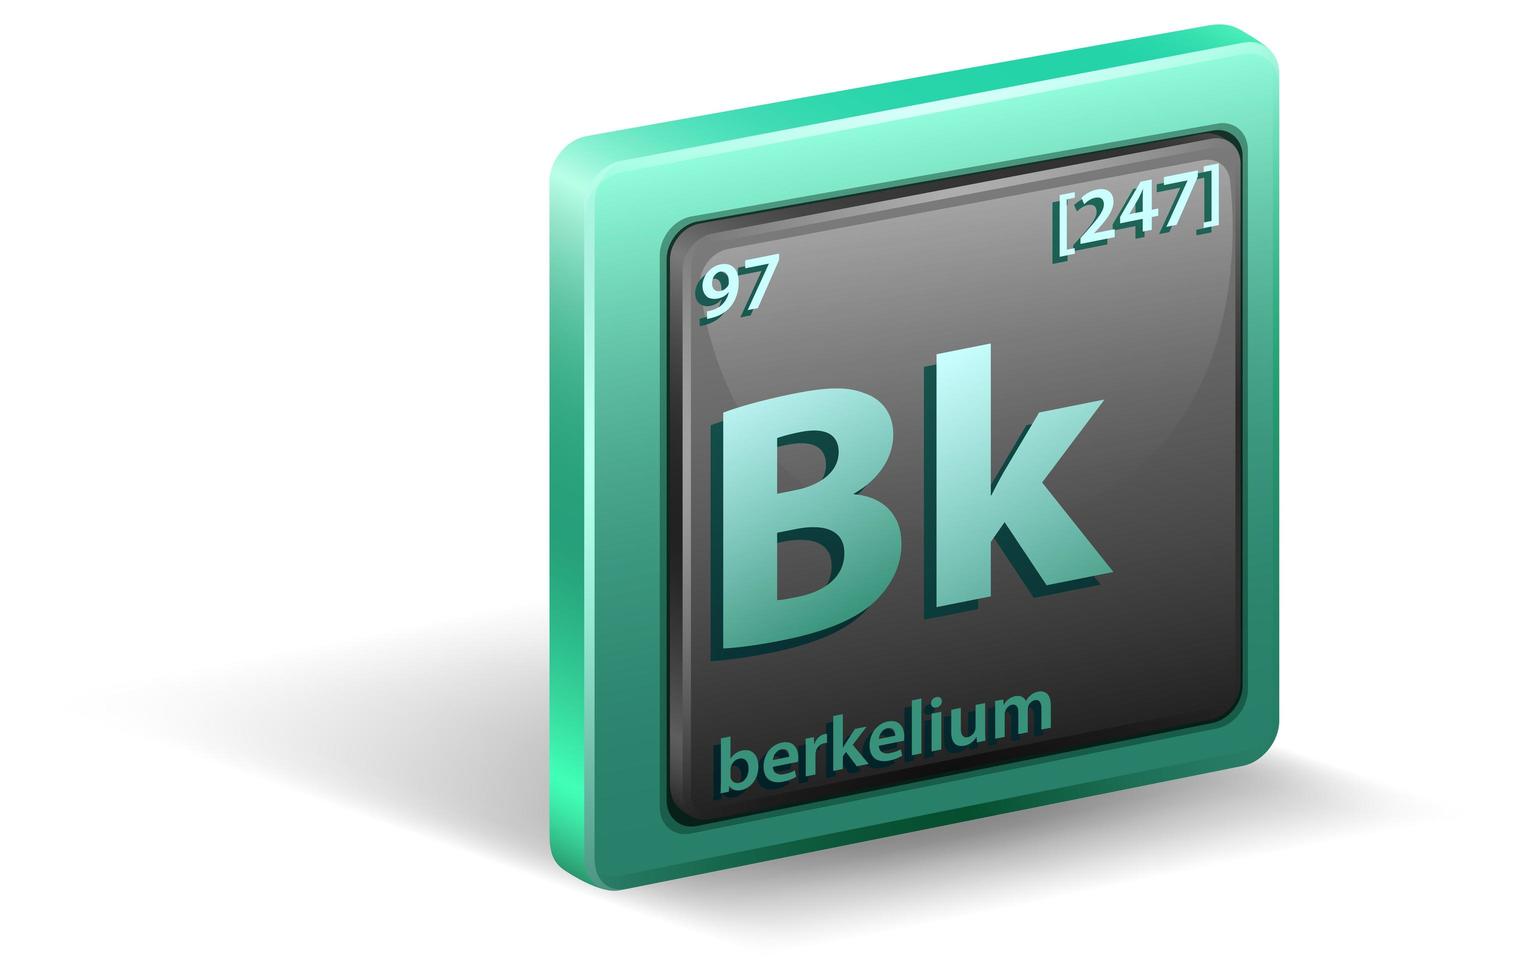 élément chimique berkelium. symbole chimique avec numéro atomique et masse atomique. vecteur